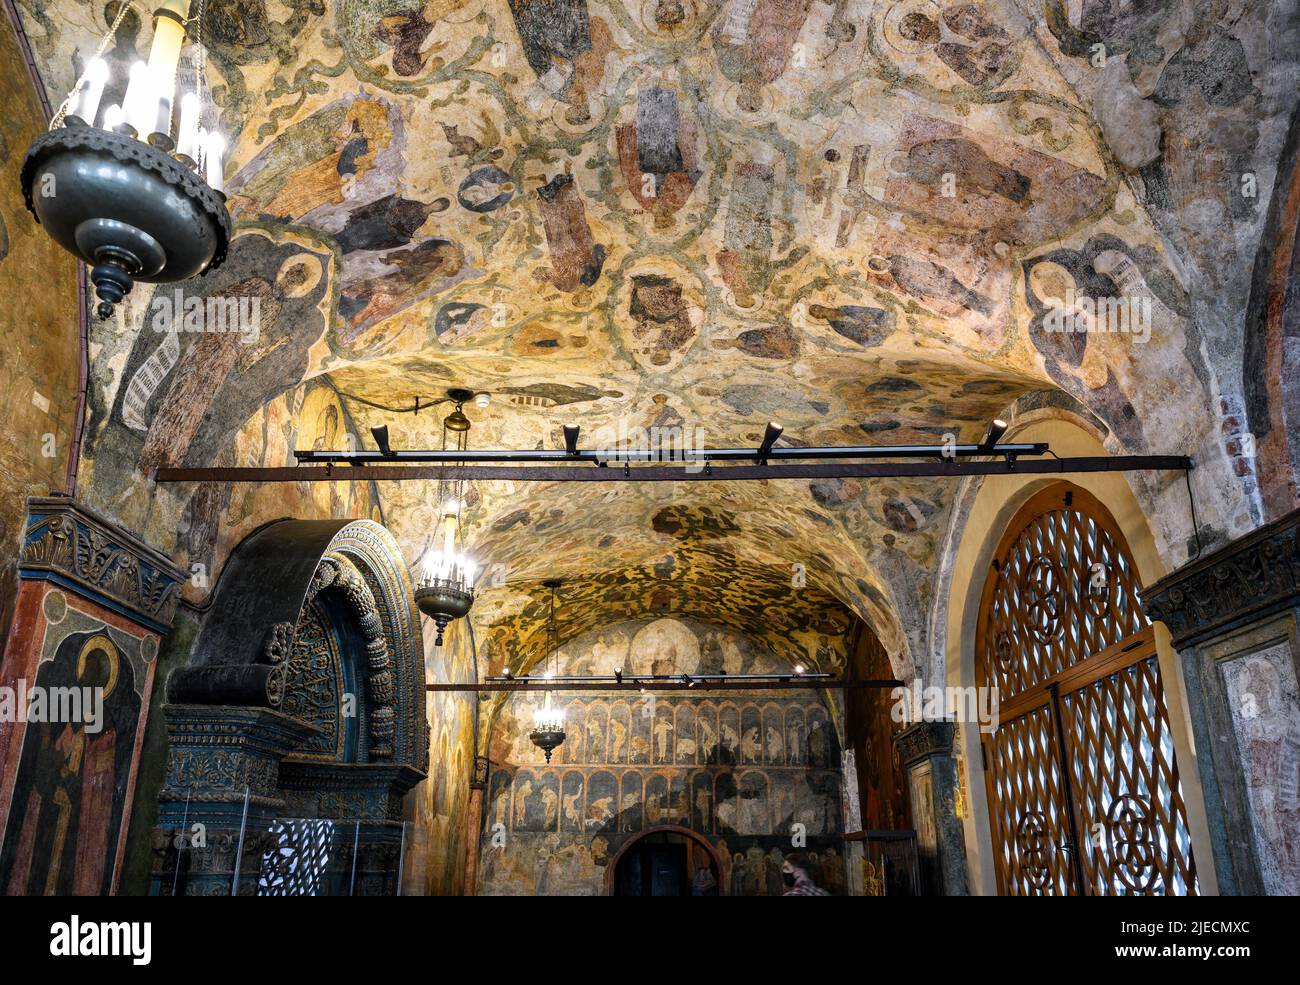 Moskau - 2. Jun 2021: Gemälde in der Erzengel-Kathedrale im Moskauer Kreml, Russland. Alte Fresken im russischen Tempel, historisches Wahrzeichen von Moskau Stockfoto